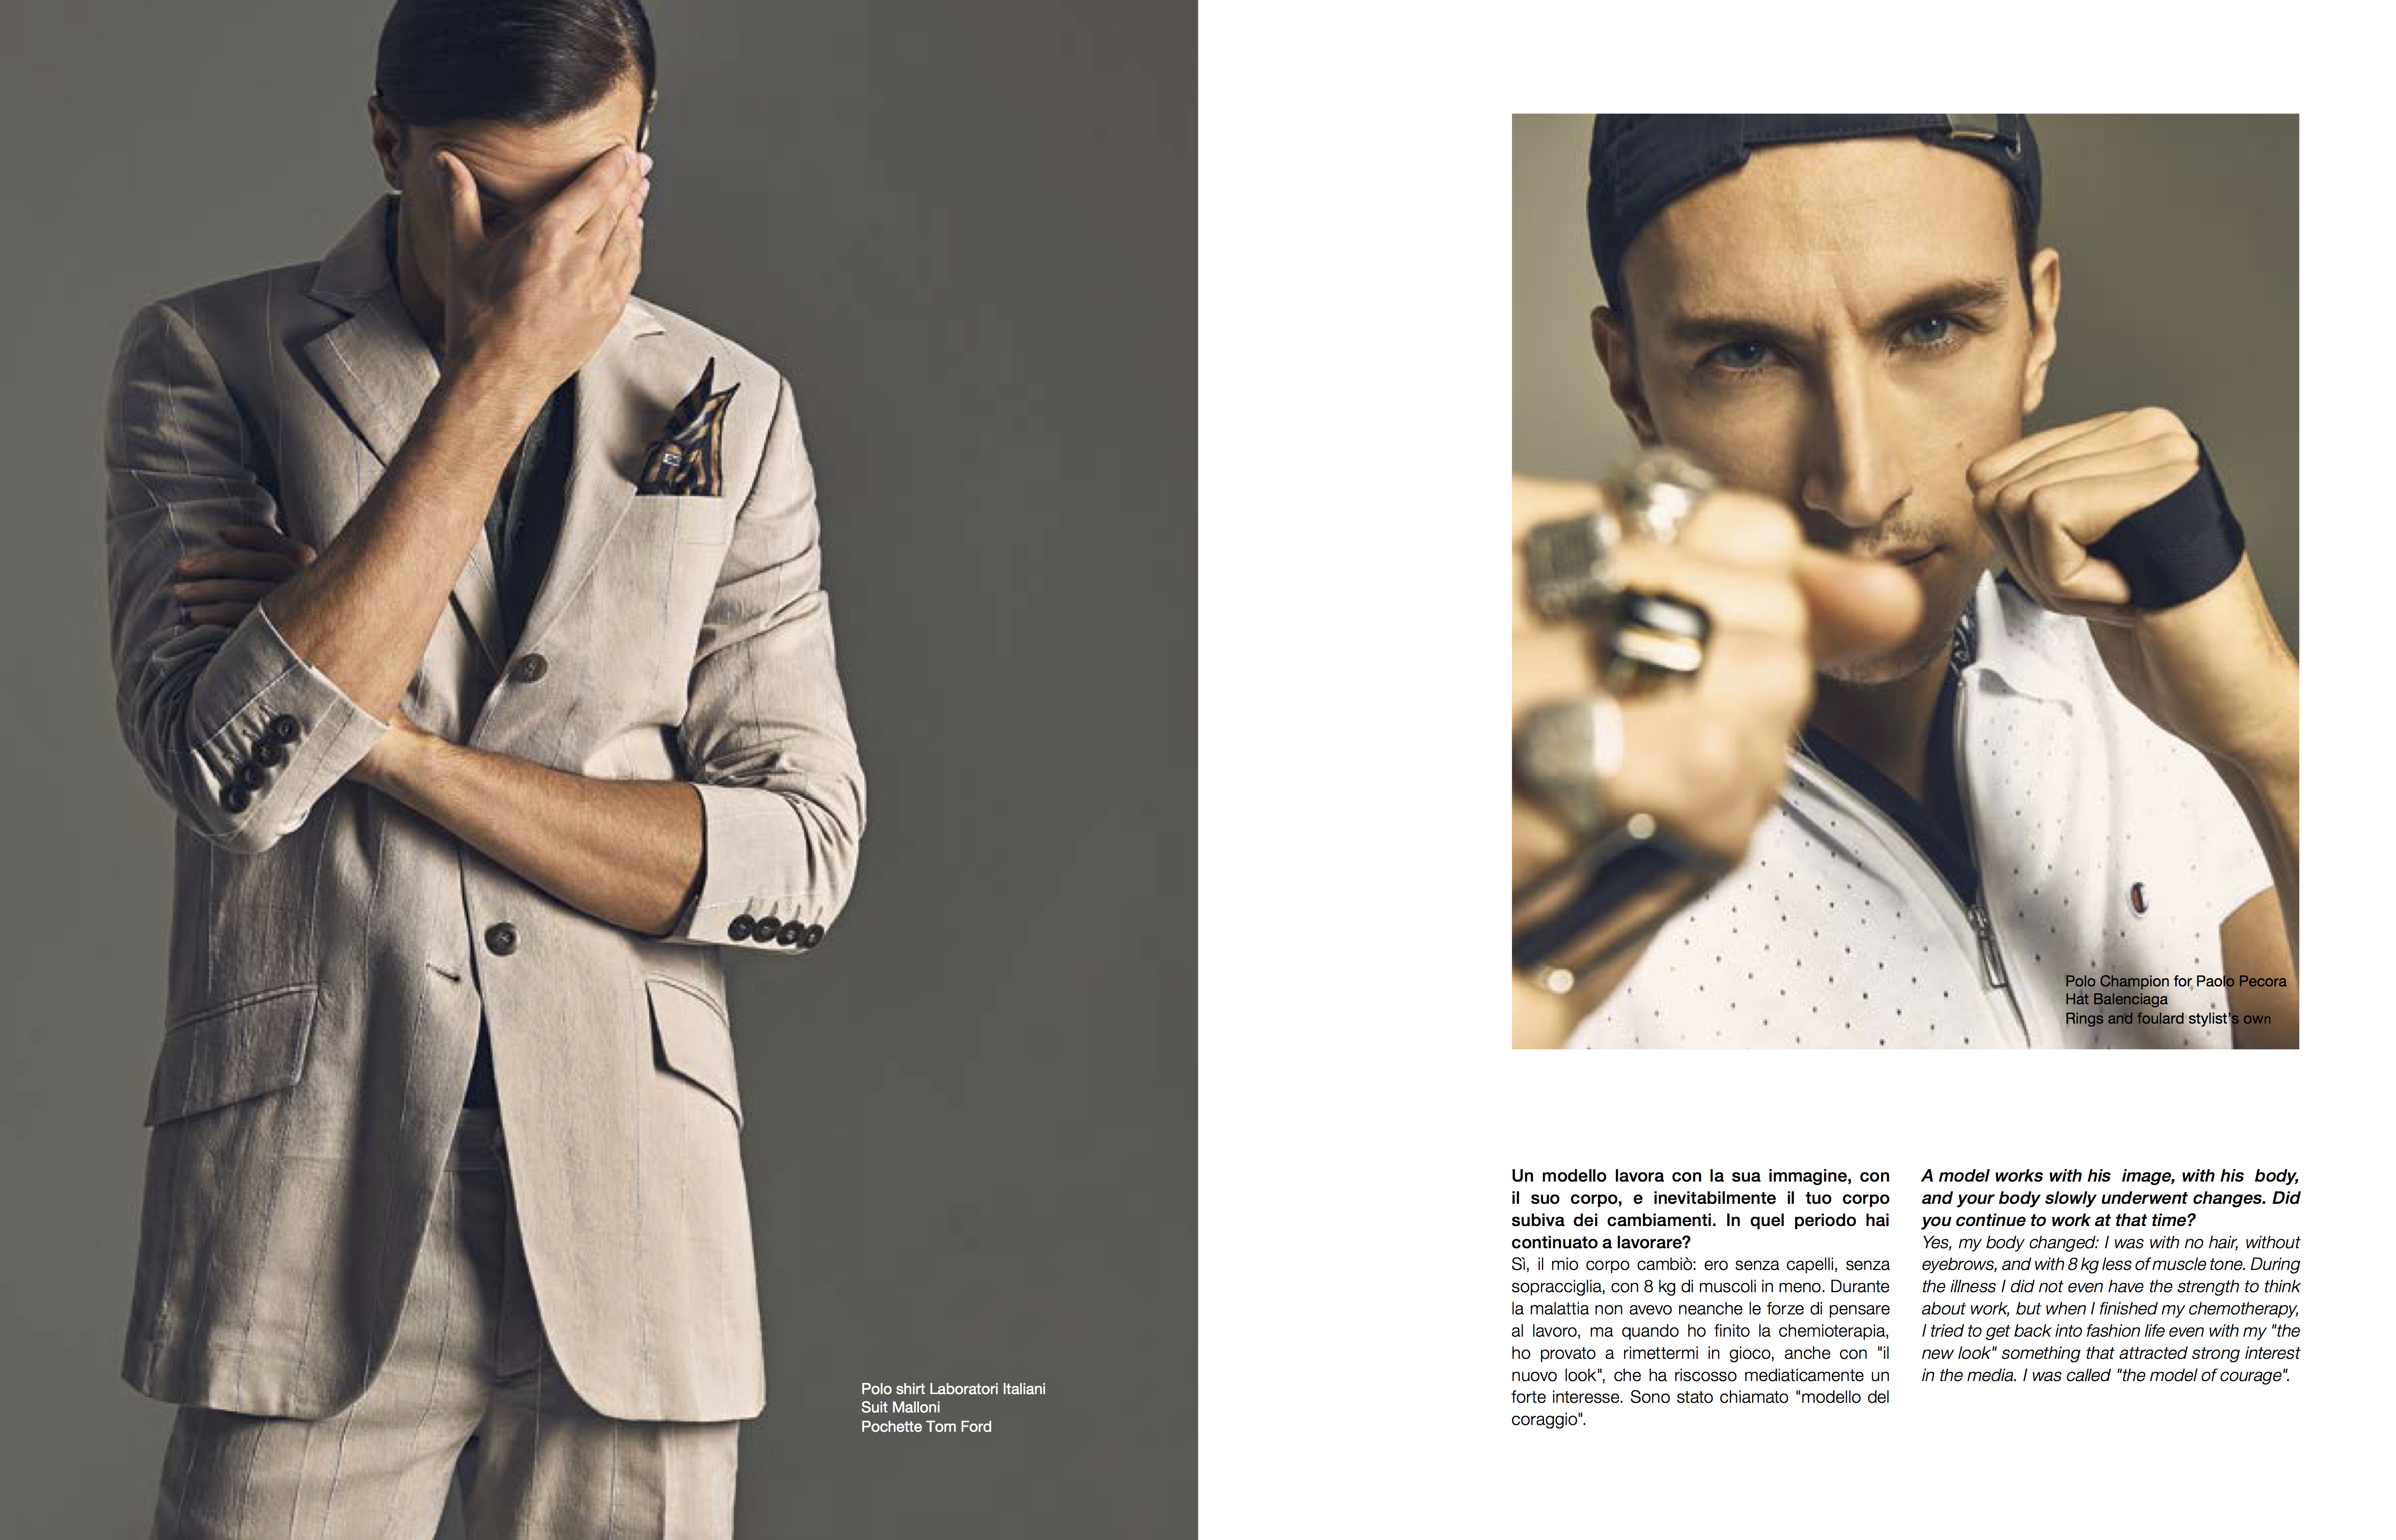 Emiliano Conte Fashion Stylist Reborn Interview Editorial For Spaghettimag Starring Fausto Di Pino Photo By Eugenio D Orio